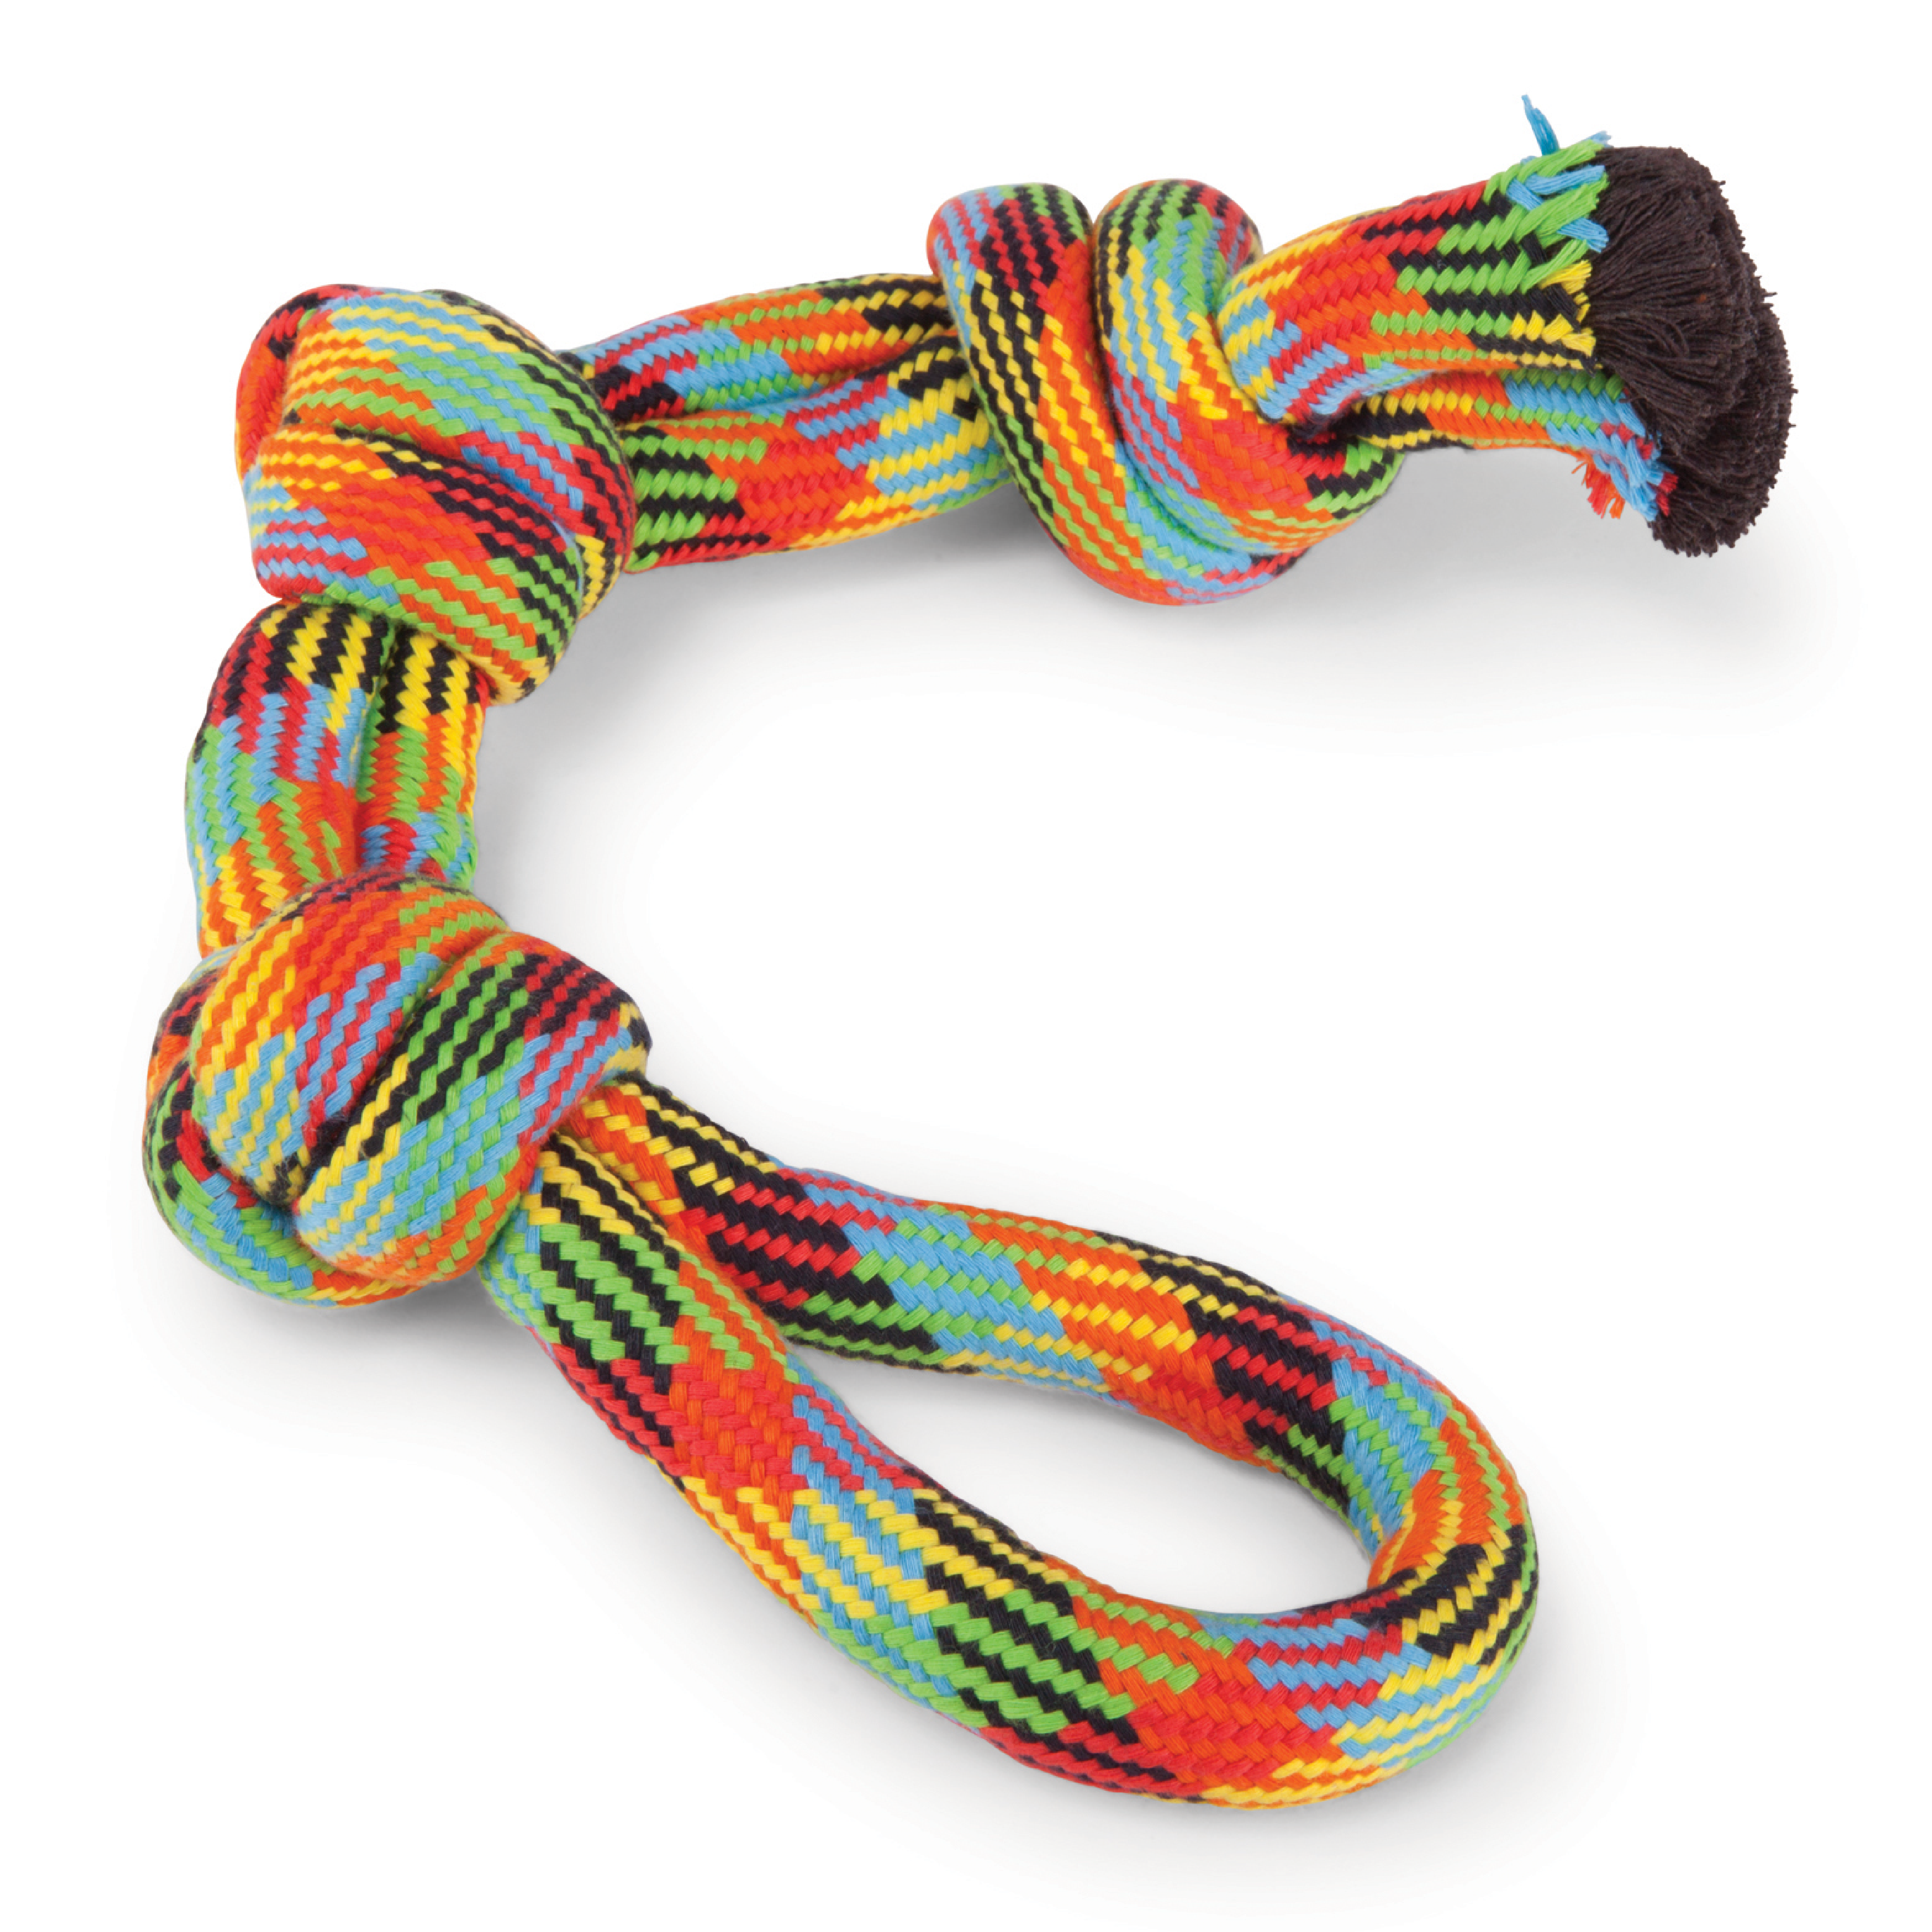 Kazoo Braided Rope 3 Knot Tug Dog Toy